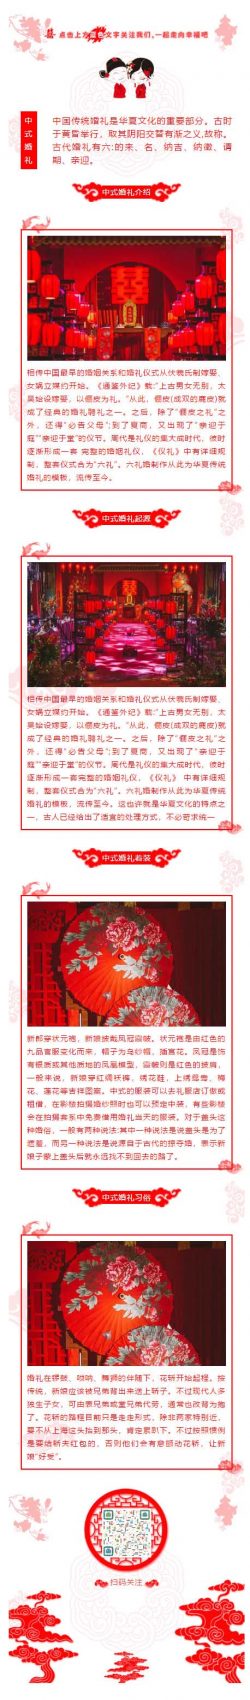 婚姻礼仪传统婚礼中式婚礼红色风格微信推文模板